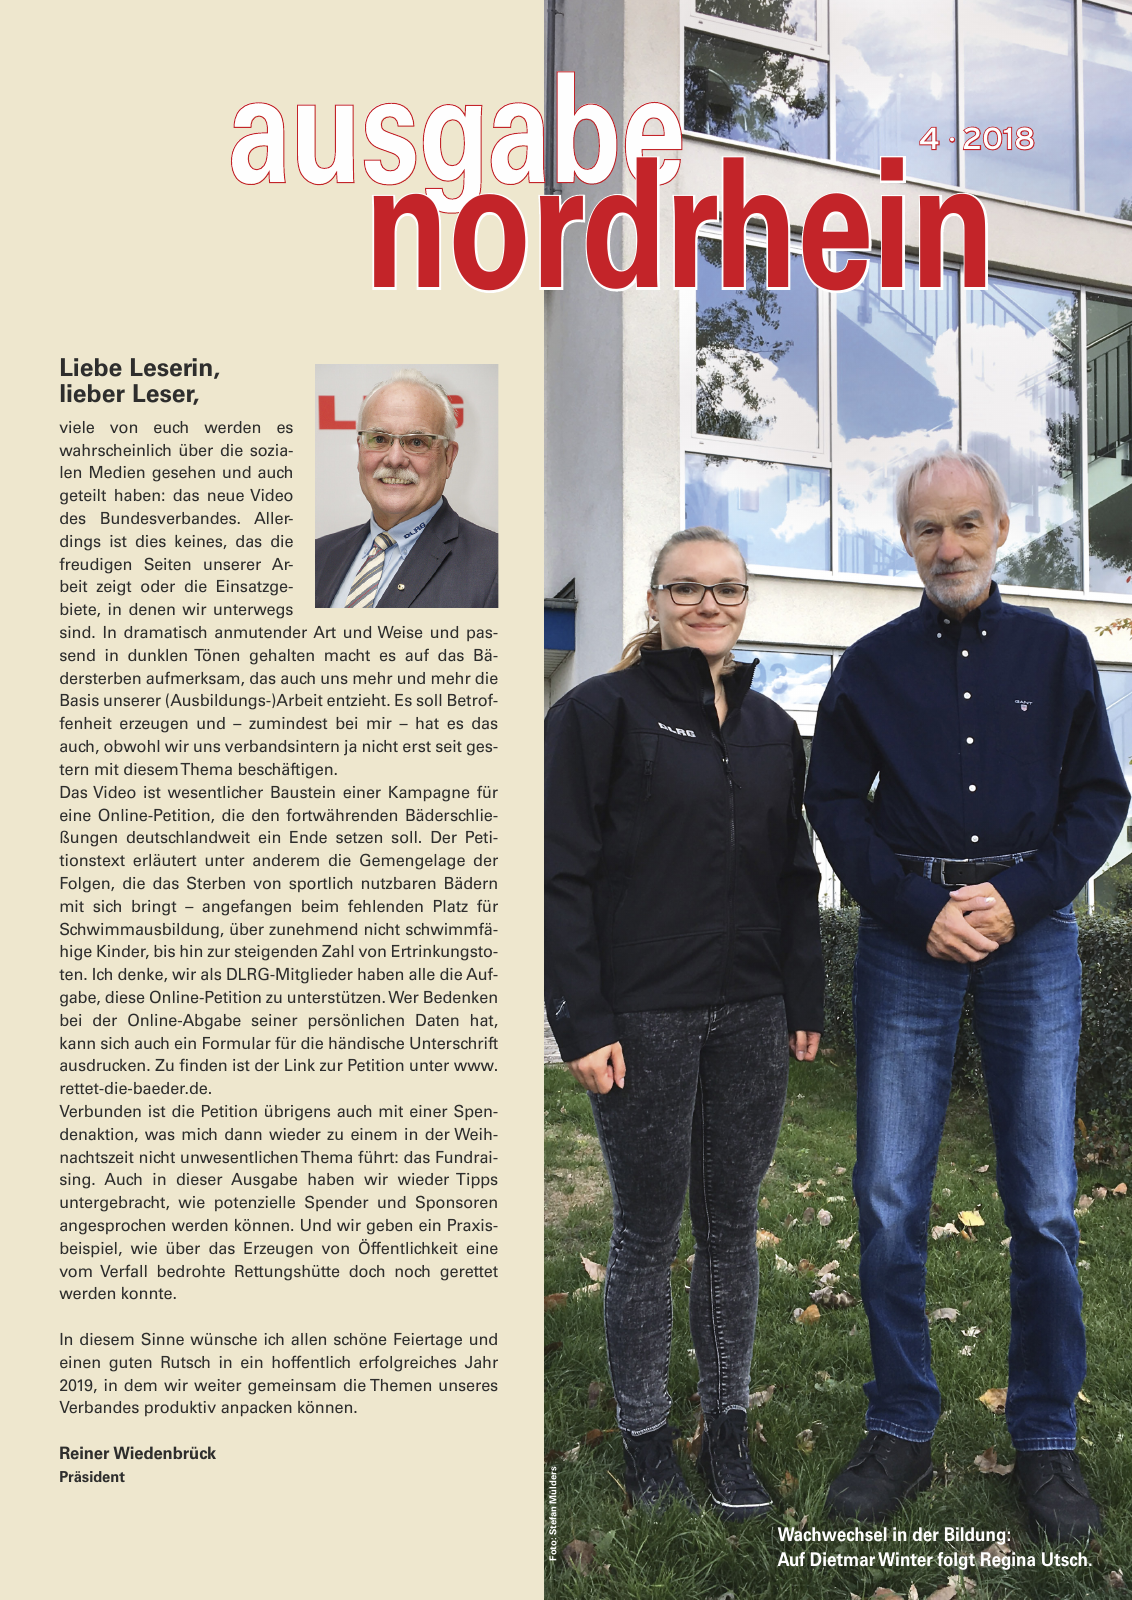 Vorschau Lebensretter 4/2018 - Regionalausgabe Nordrhein Seite 3